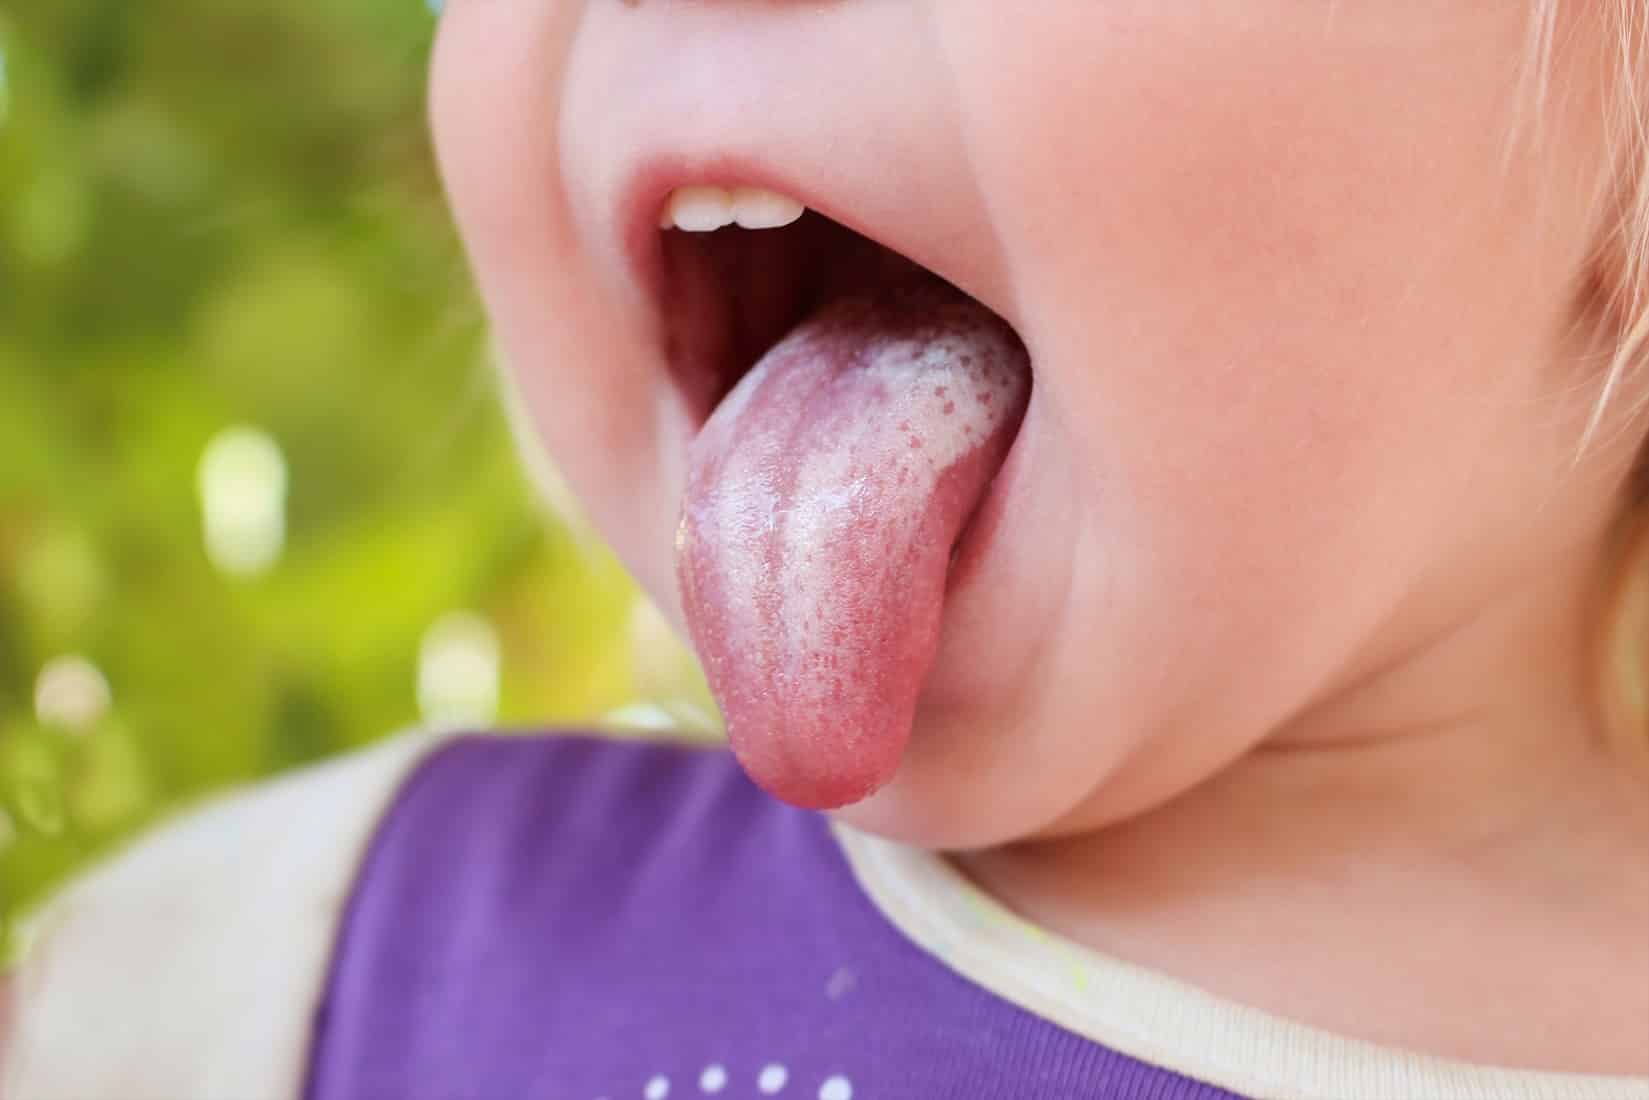 lingua do bebe com sapinho